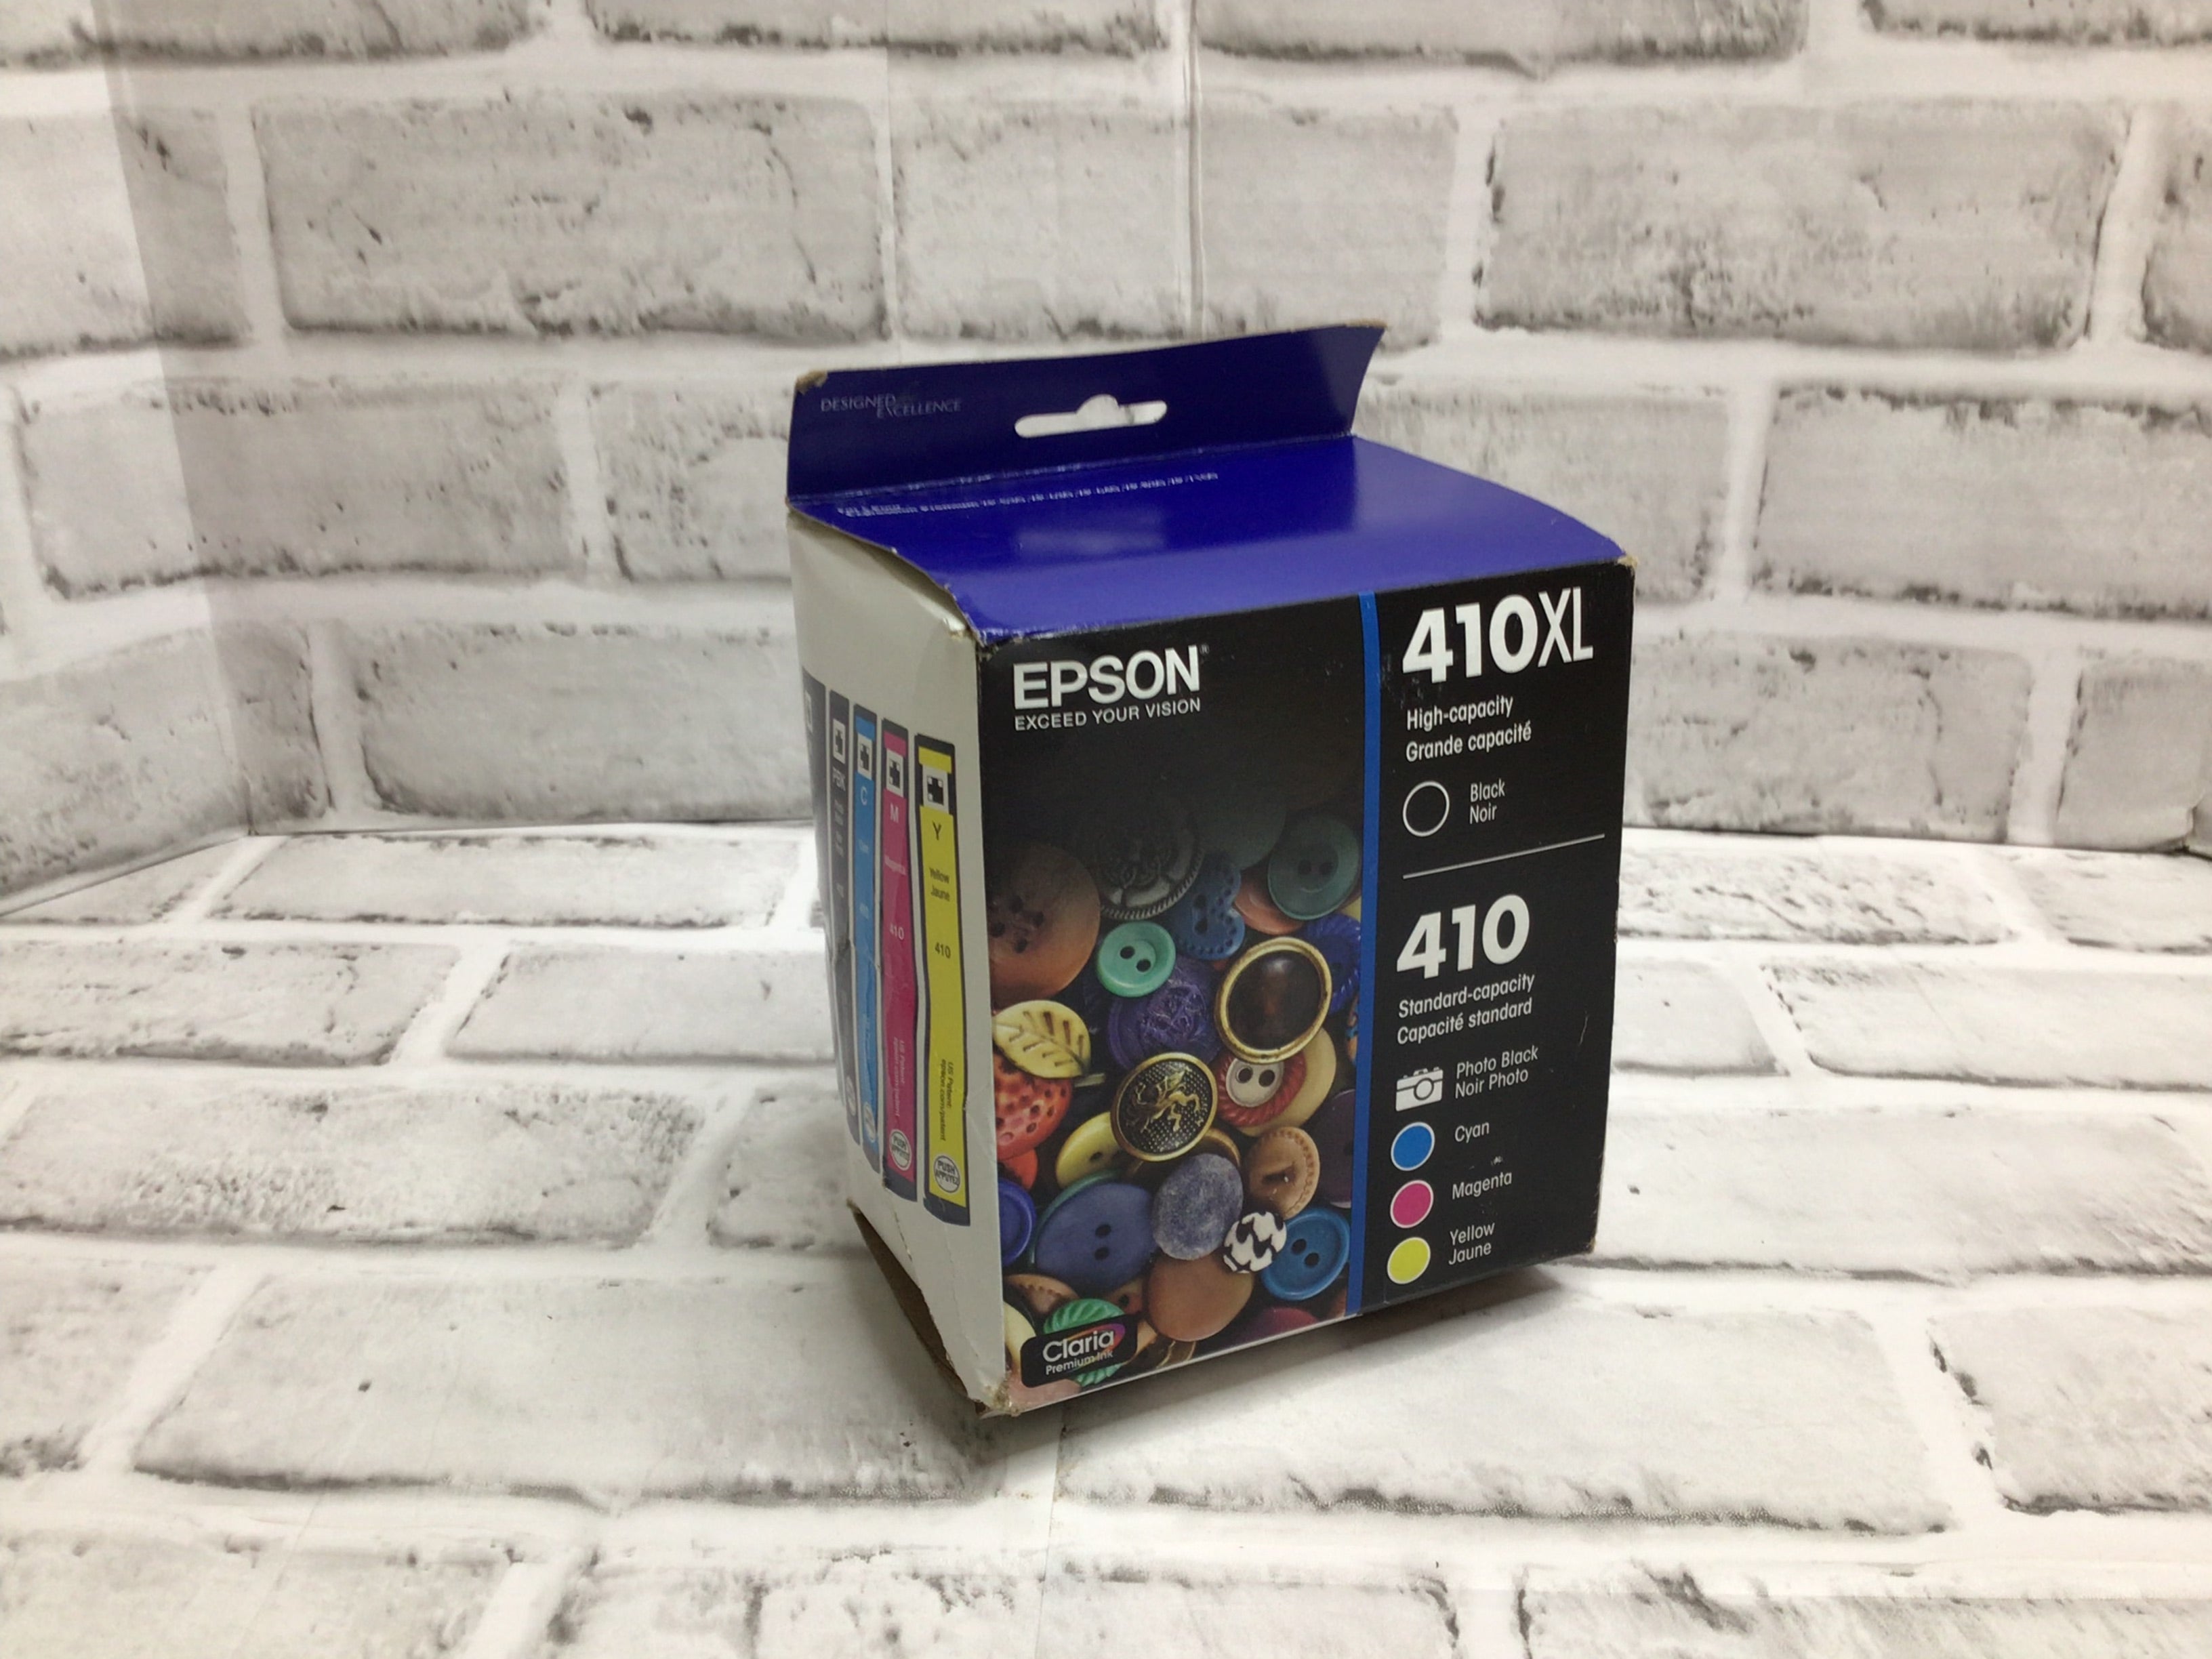 Epson 410XL Black & 410 Photo Black & Color Ink Cartridges Exp. 8/25 (8080355164398)